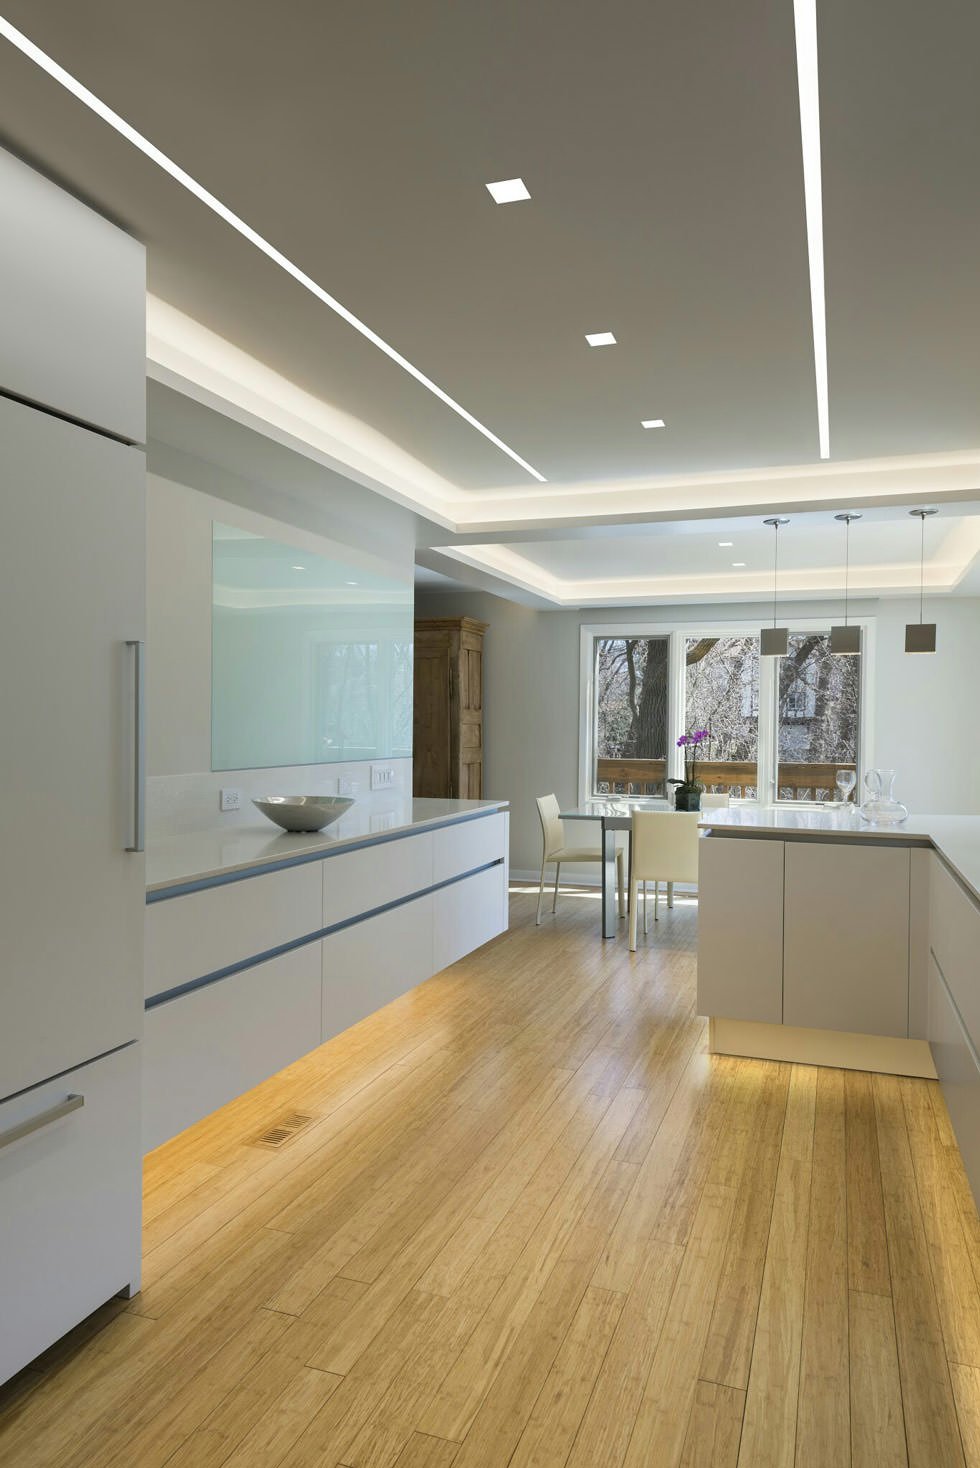 Elegante cucina moderna in bianco e grigio con un ottimo sistema di illuminazione - sul soffitto con gole luminose e sotto i mobili